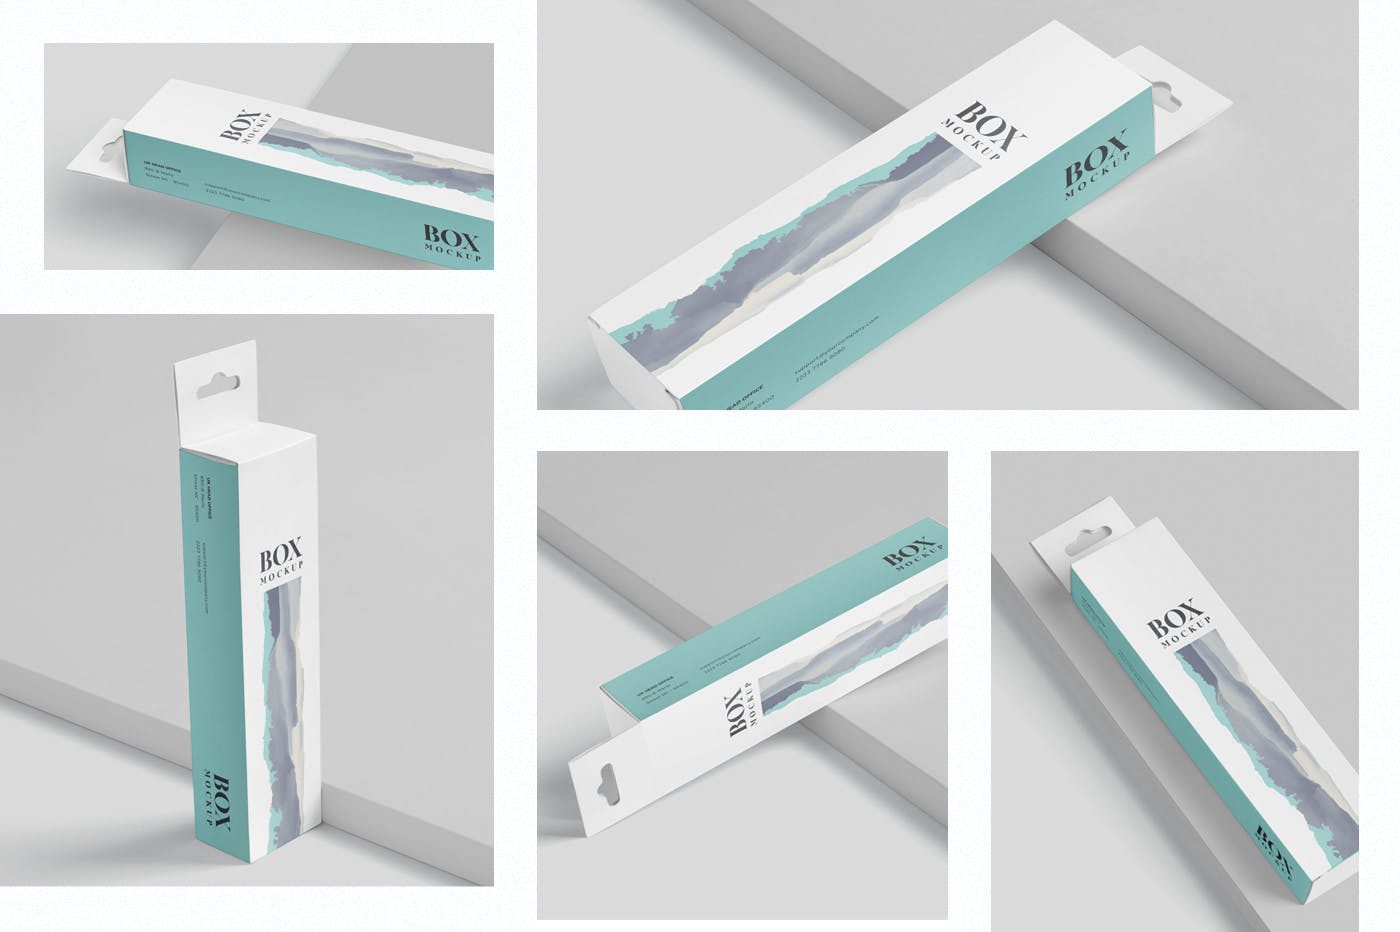 超薄矩形长条包装盒外观设计效果图素材库精选 Box Mockup PSDs – High Slim Rectangle Size Hanger插图(1)